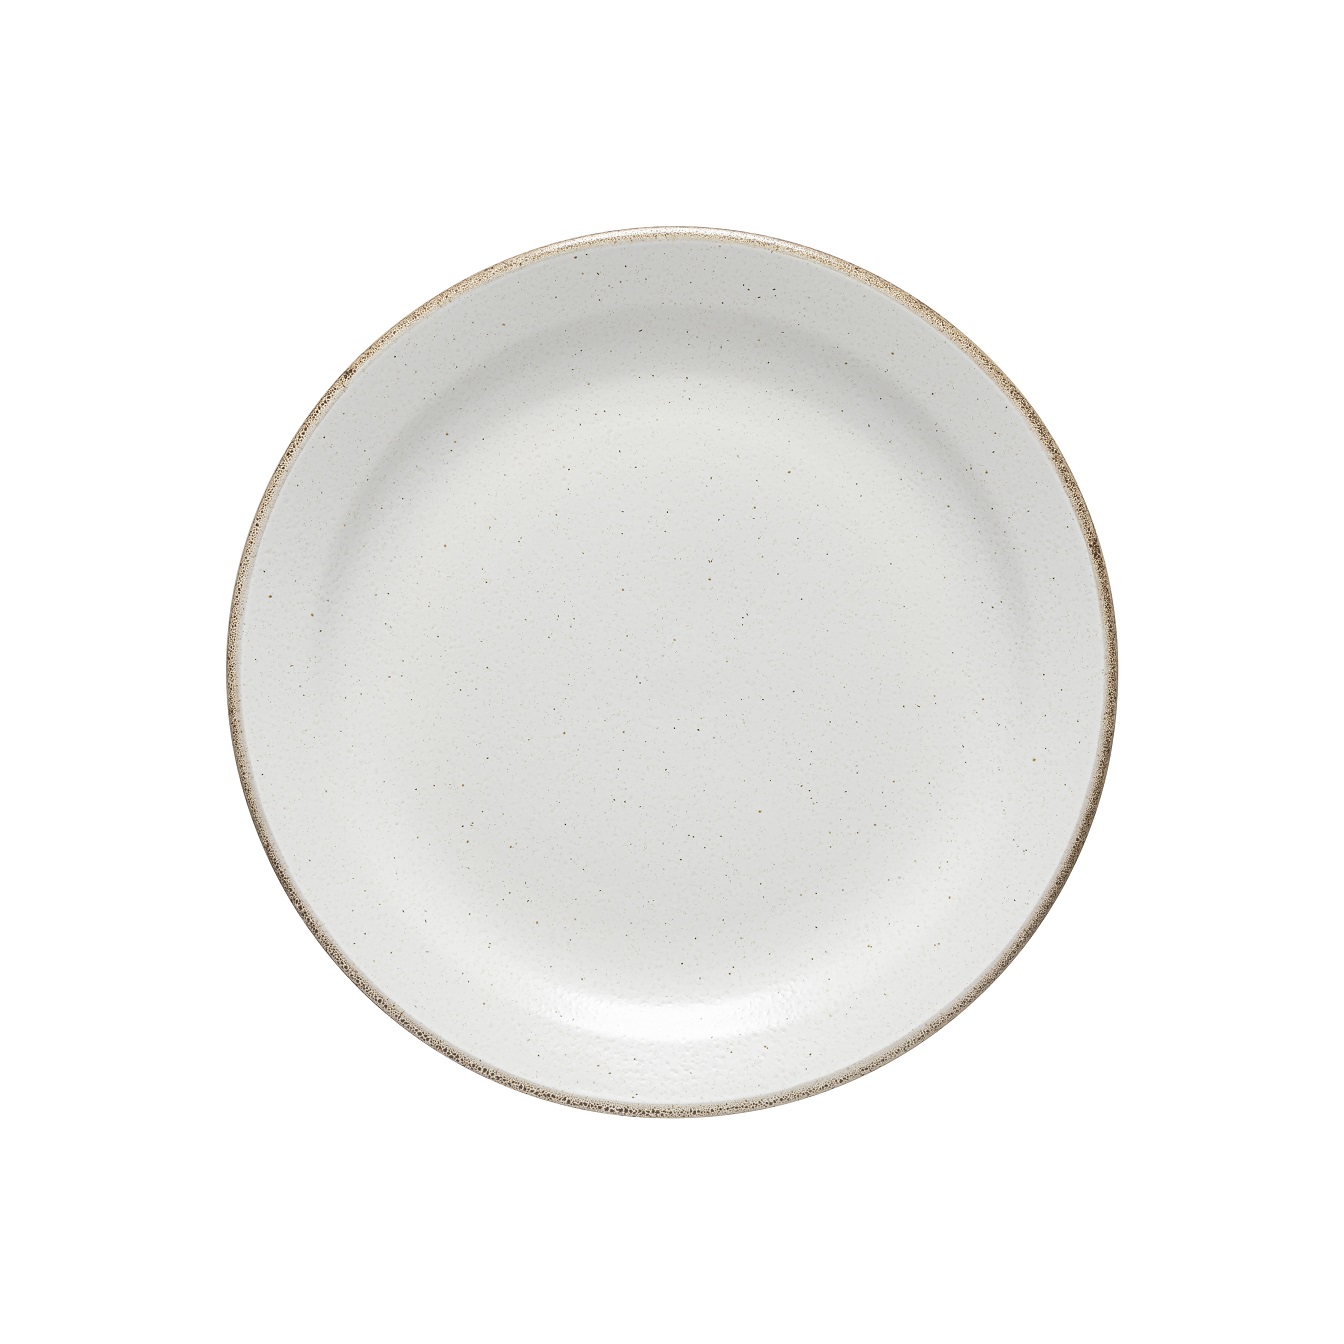 Positano White Dinner Plate 28cm Gift